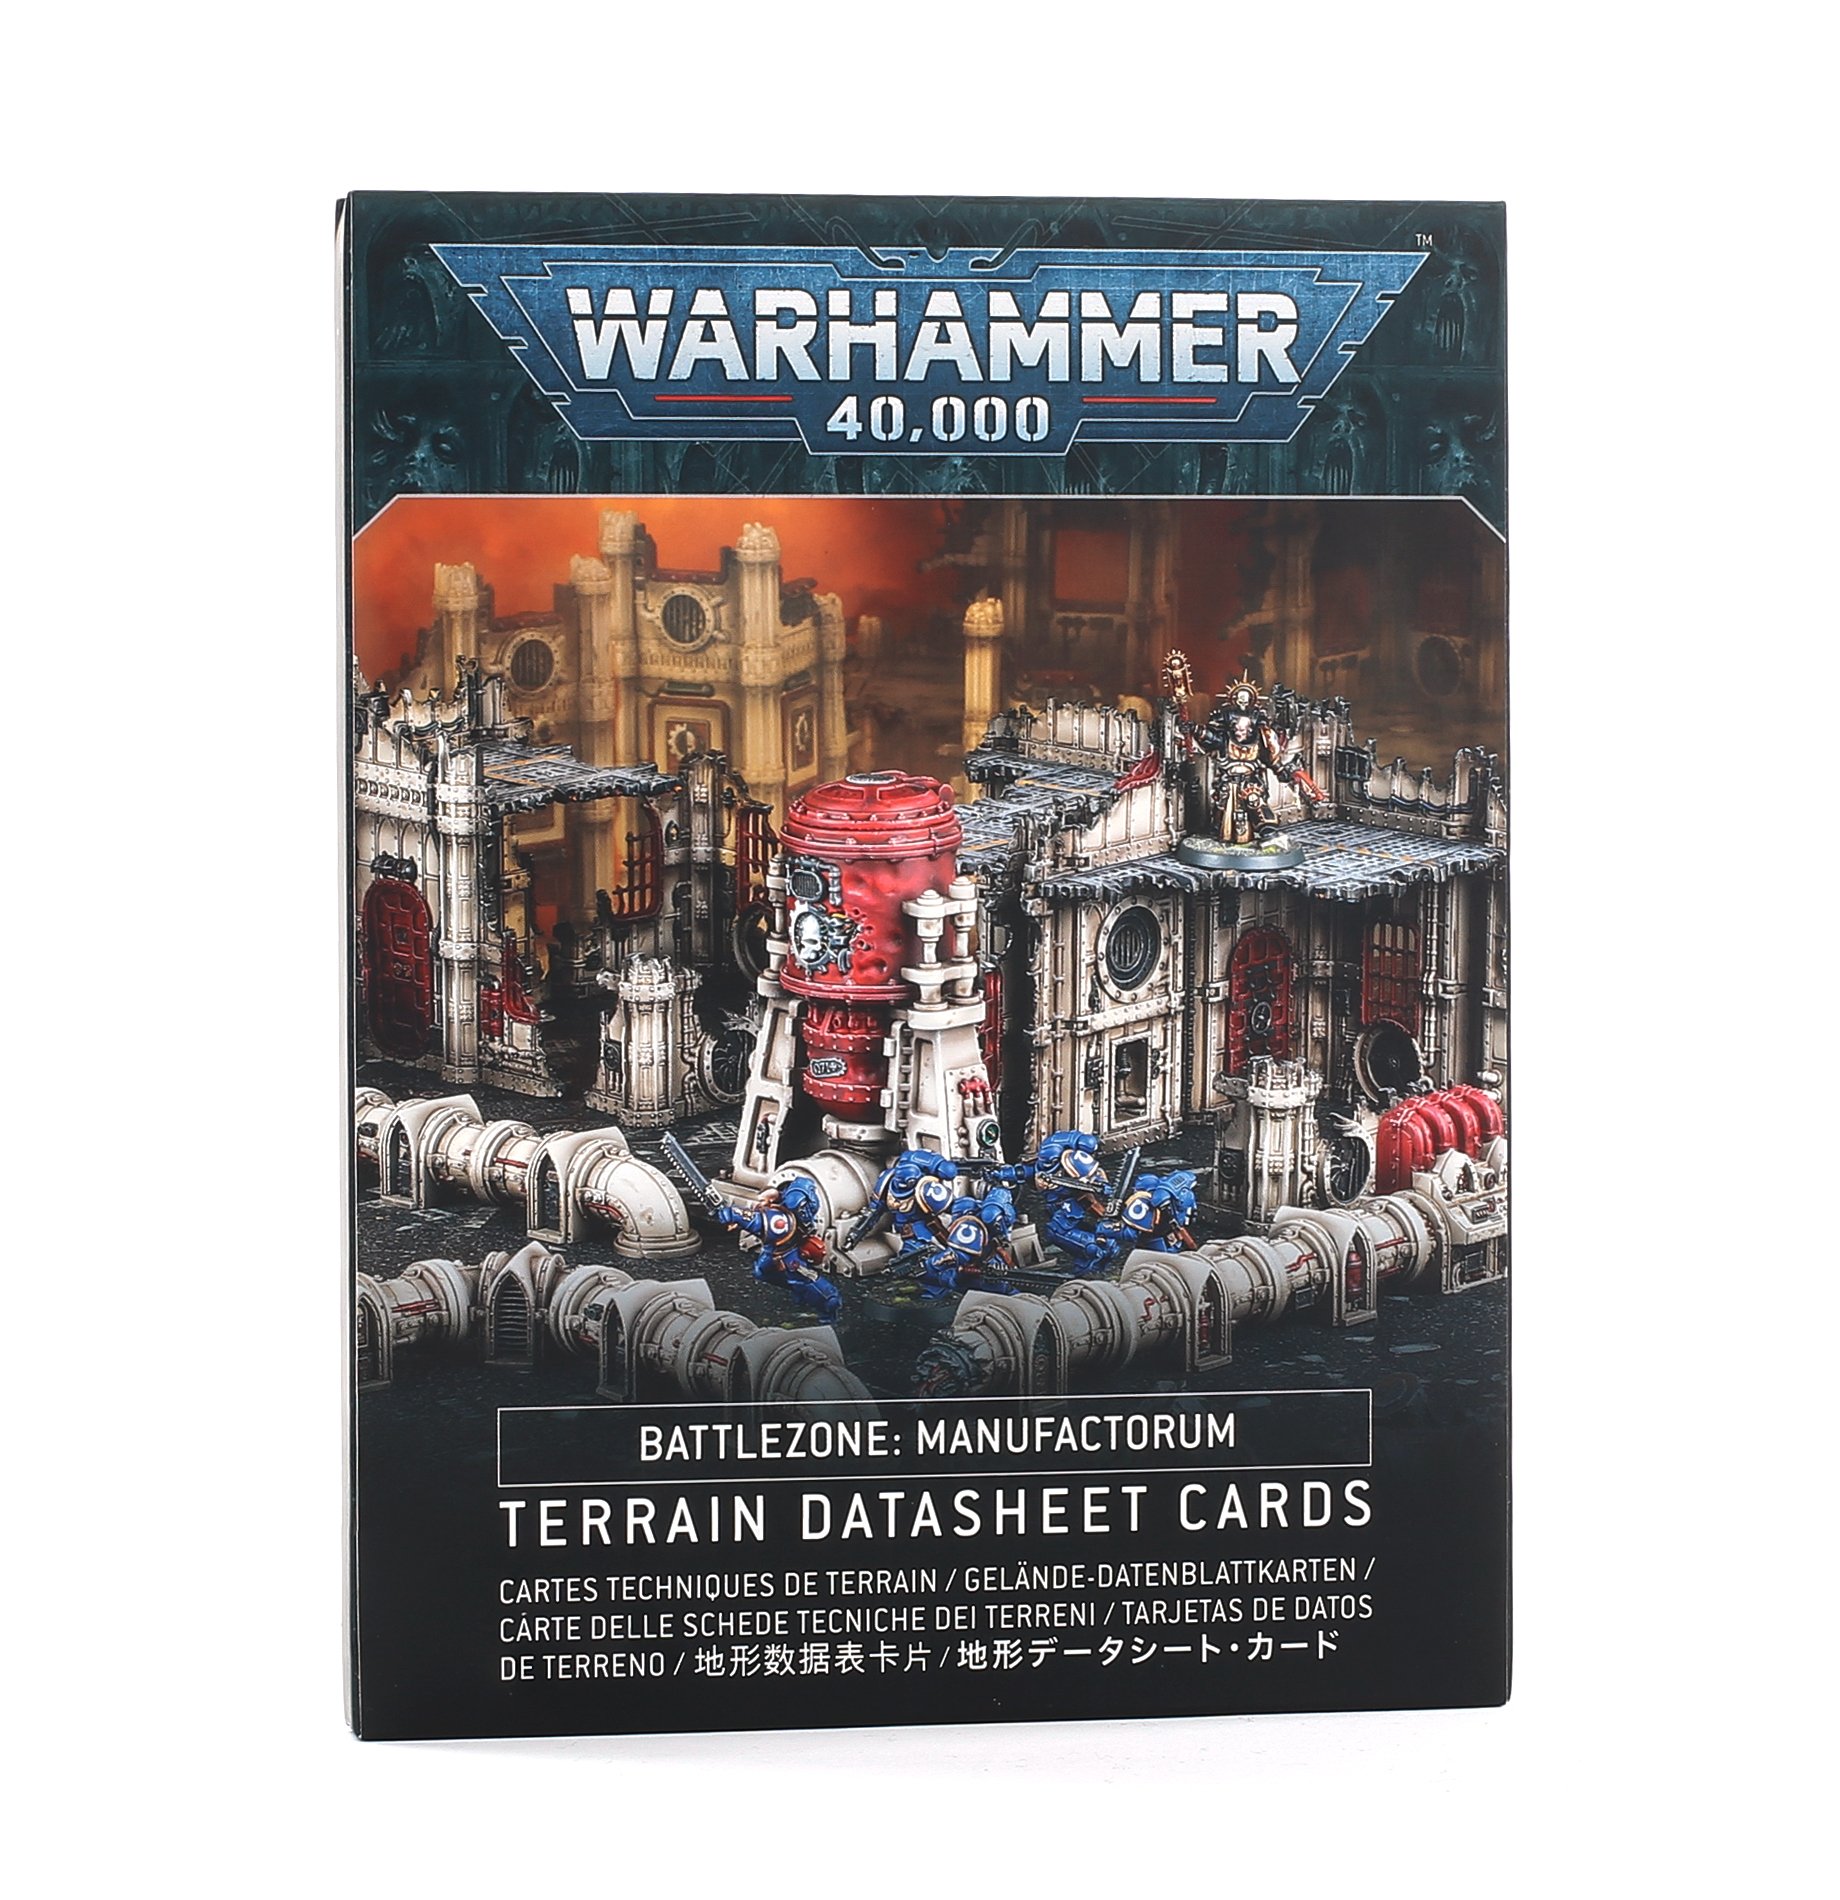 Warhammer 40,000: Battlezone: Manufactorum Terrain Datasheet Cards 